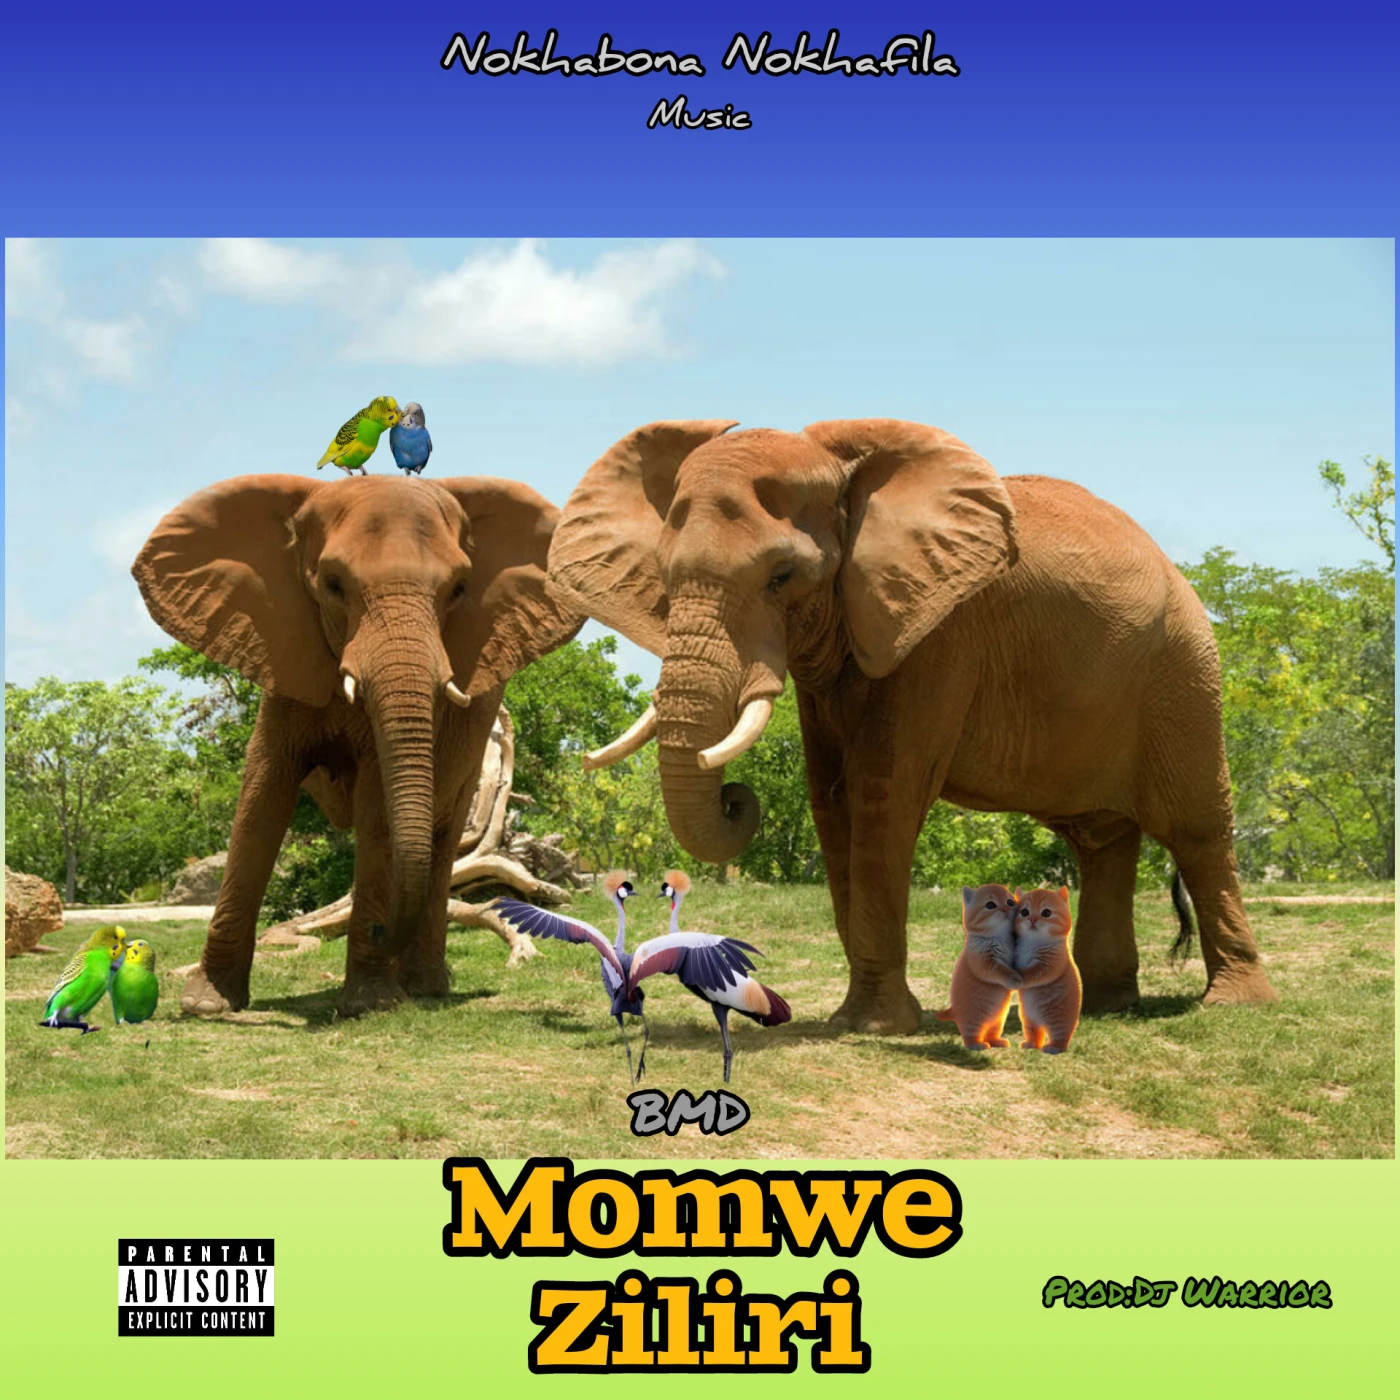 momwe-ziliri-bmd - mp3 download